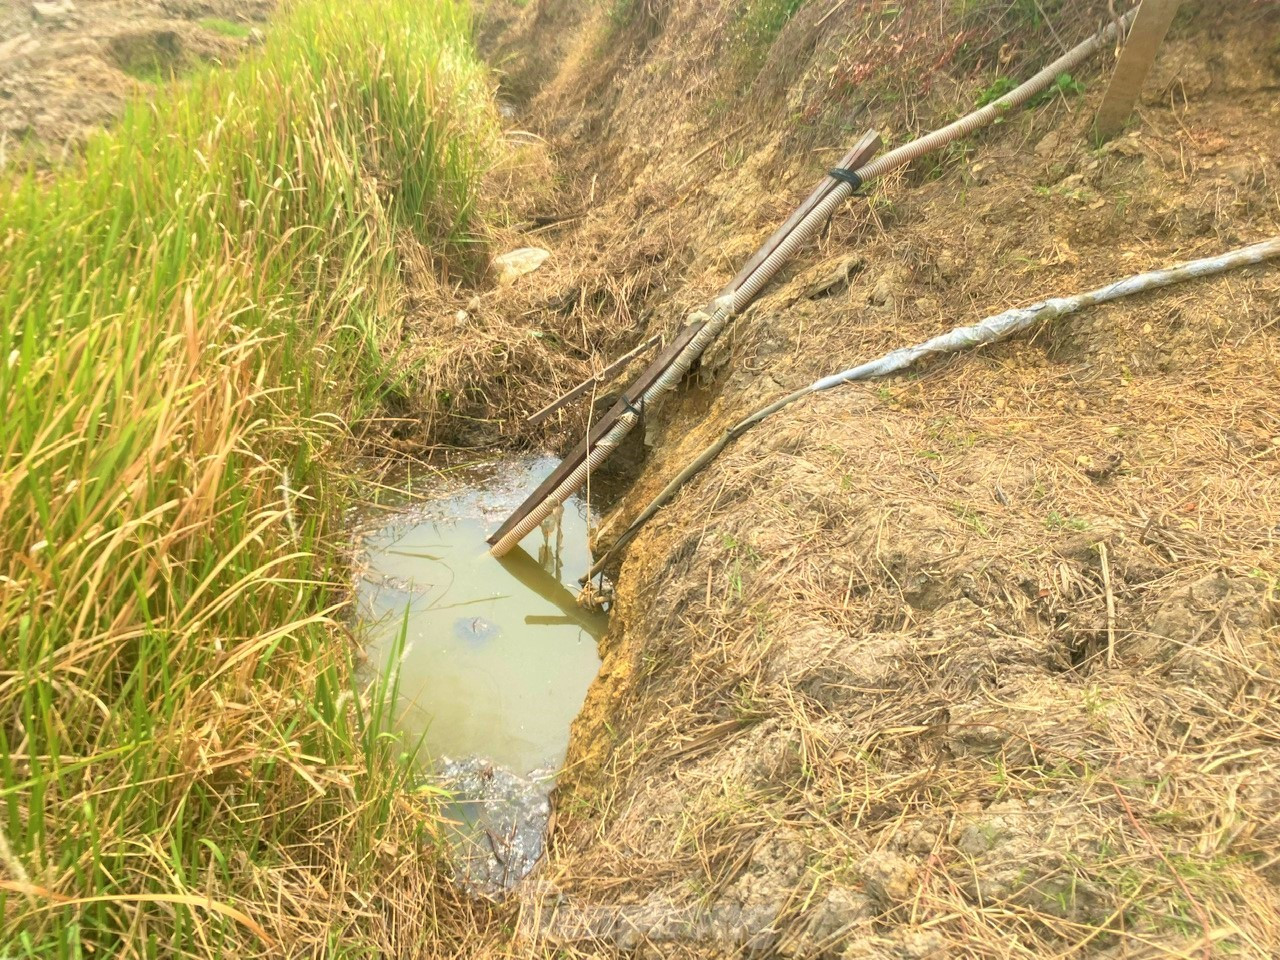 Nhà máy nước hiện đại nhất Đắk Lắk để không, người dân vẫn phải dùng nước hồ, nước mưa ảnh 6